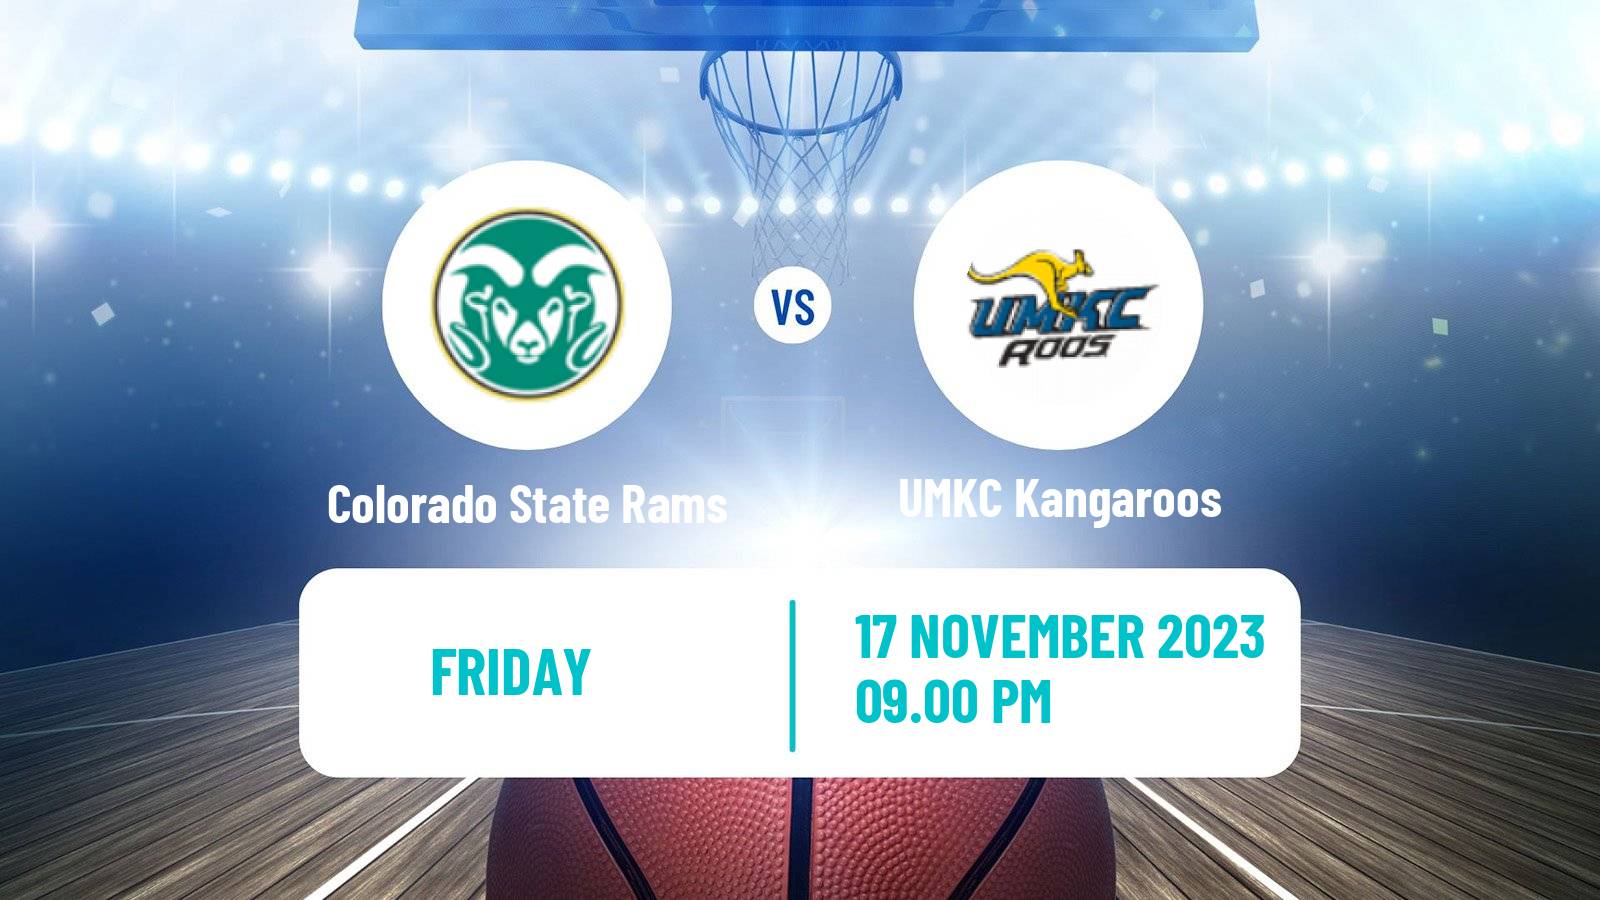 Basketball NCAA College Basketball Colorado State Rams - UMKC Kangaroos